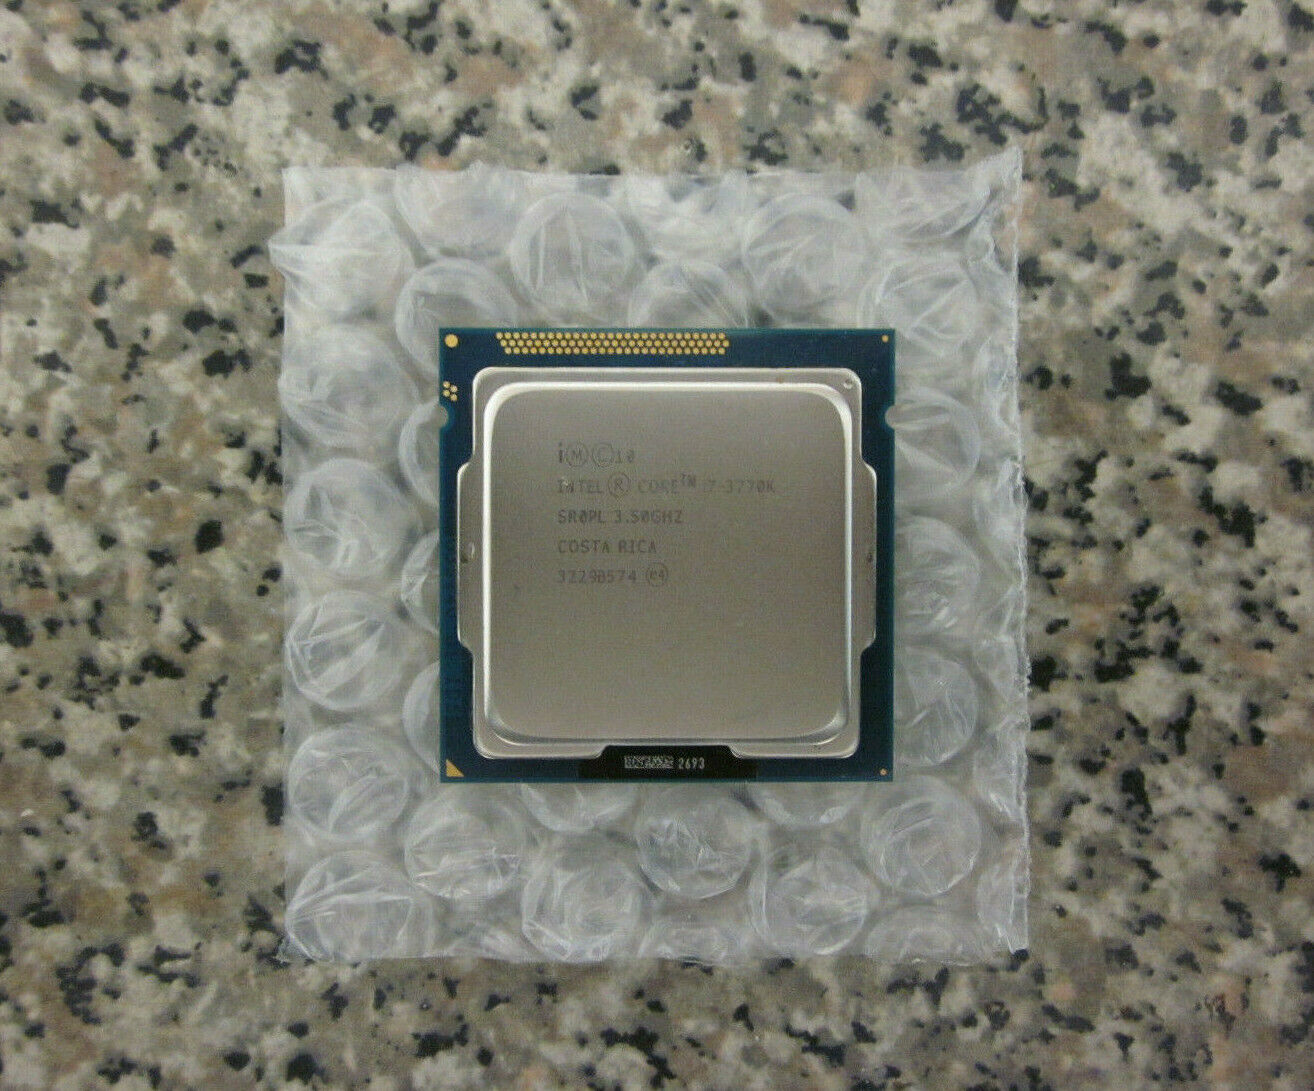 Intel SR0PL Core i7-3770K 3.5GHz LGA1155 Quad-Core CPU Processor 